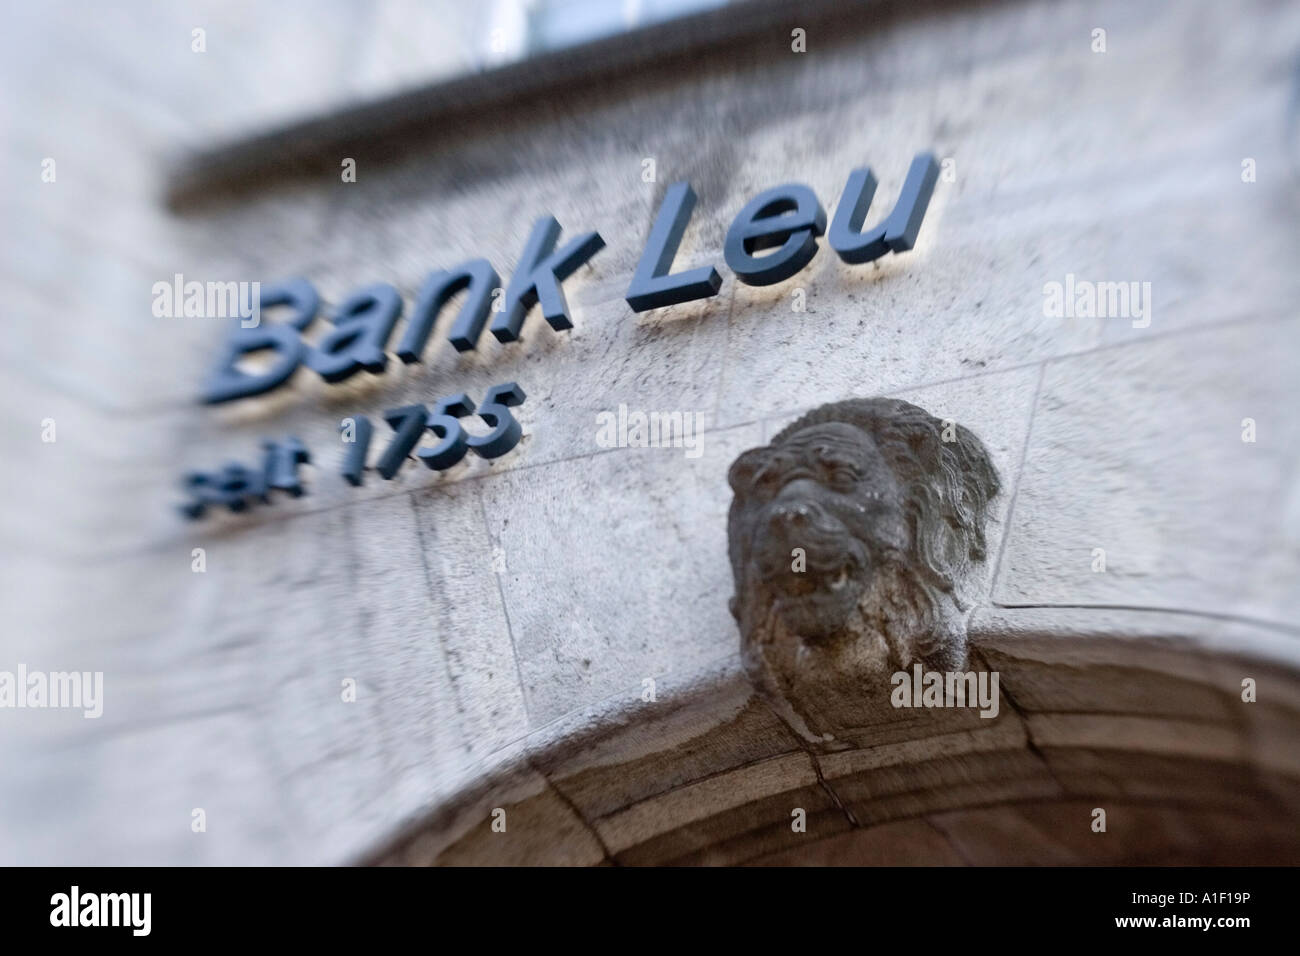 Switzerland Zuerich Bank Leu Bahnhofstrasse Stock Photo